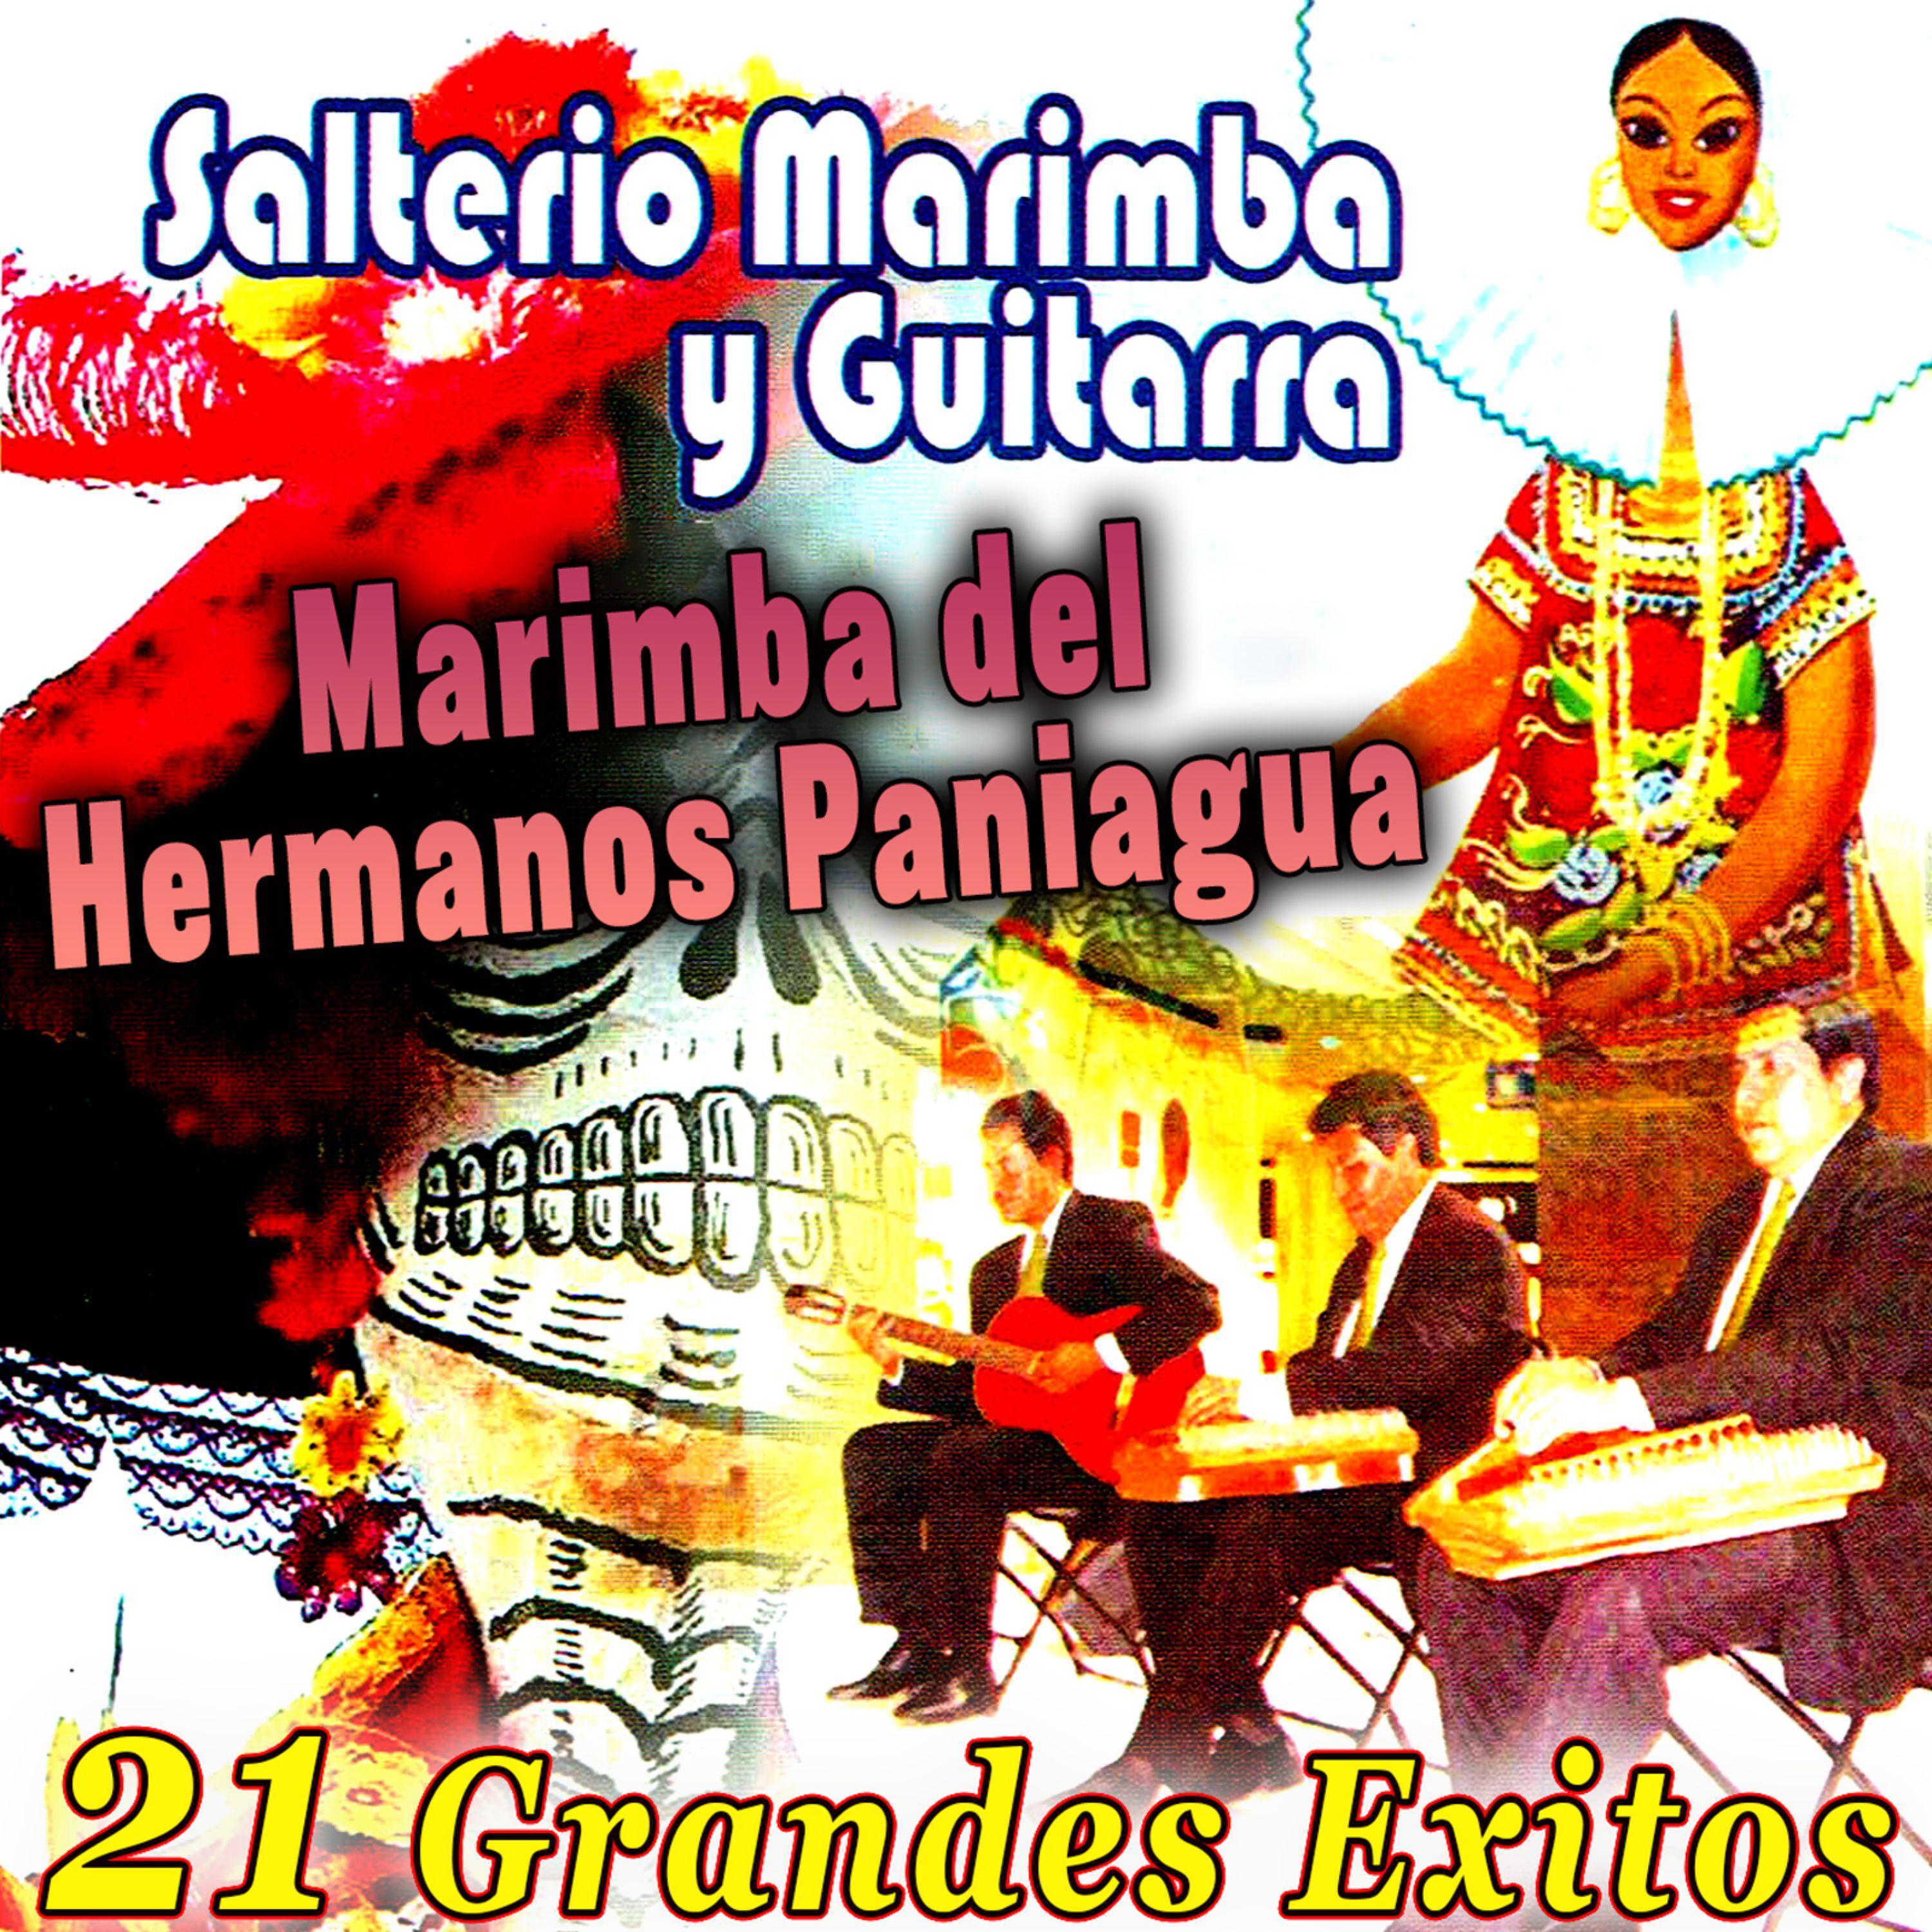 Постер альбома Salterio Marimba y Guitarra